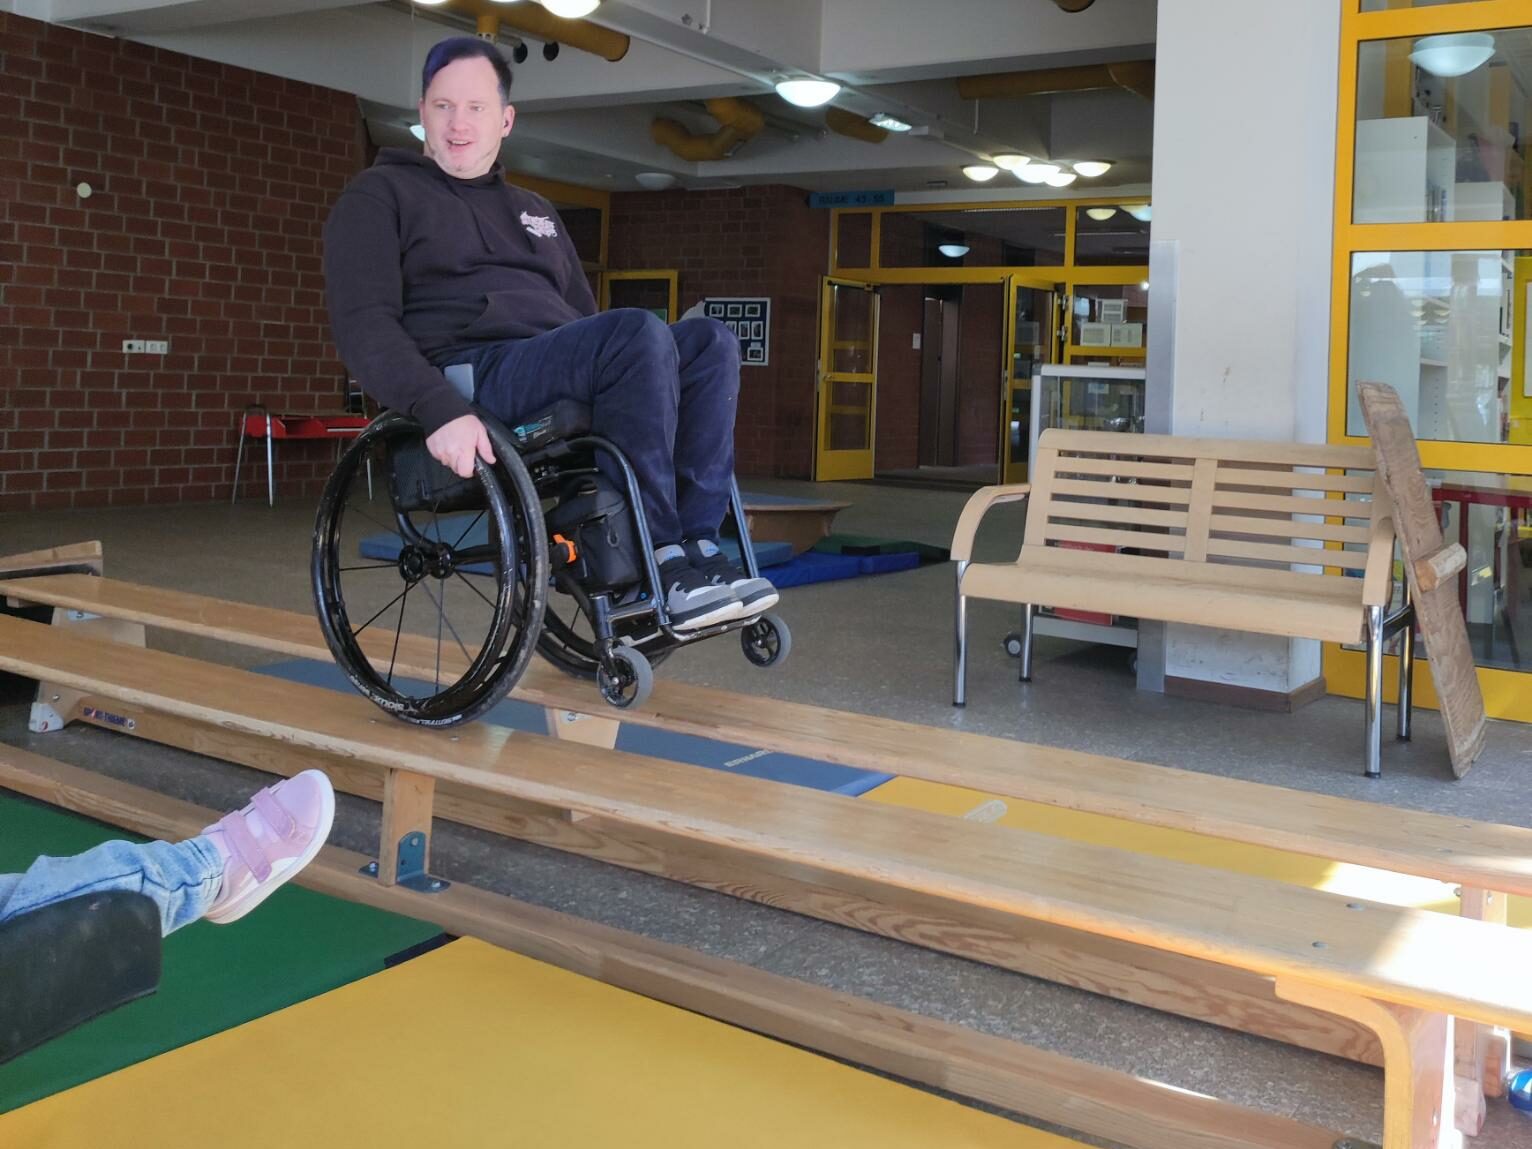 Ein Rollstuhlfahrer balanciert auf den Hinterrädern während er mit dem Rollstuhl über zwei neben einander stehende Bänke fährt. 